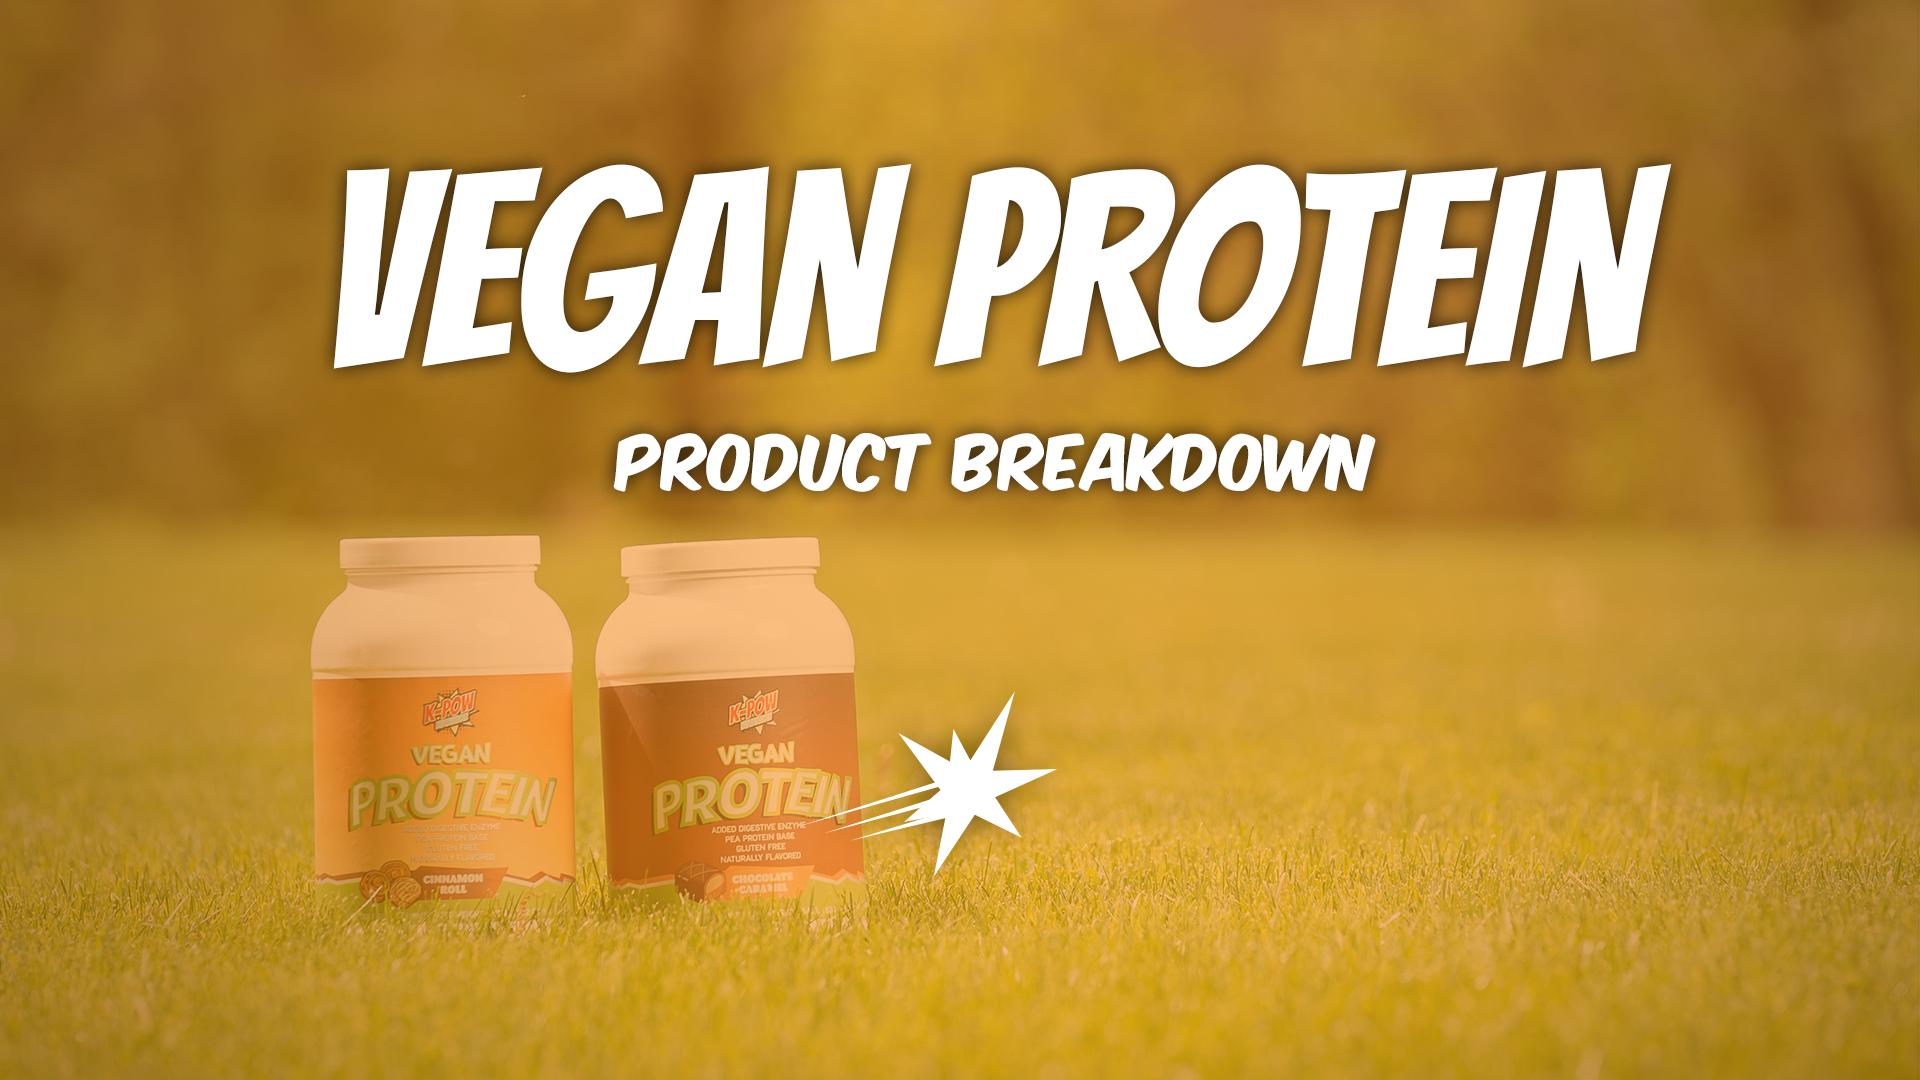 K-POW Vegan Protein: A Super-Powered Plant Protein Powder